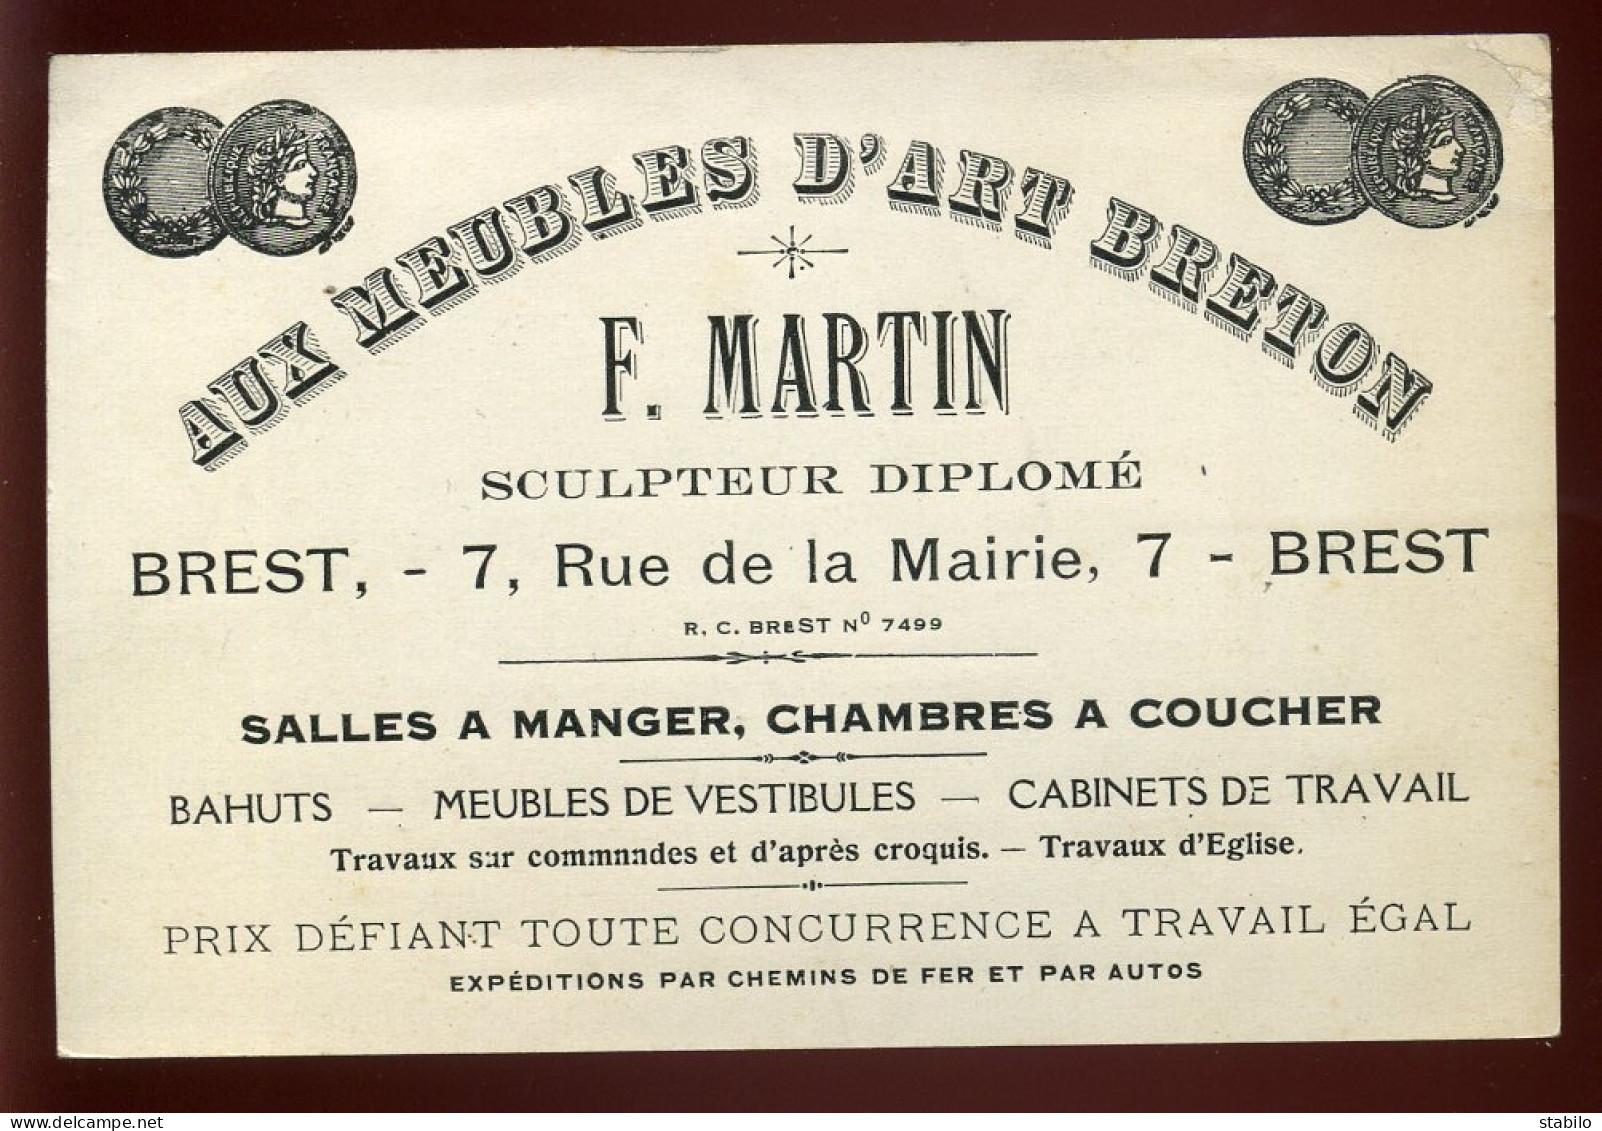 CARTE DE VISITE - BREST - MEUBLES D'ART BRETON F. MARTIN SCULPTEUR - 7 RUE DE LA MAIRIE - Visiting Cards